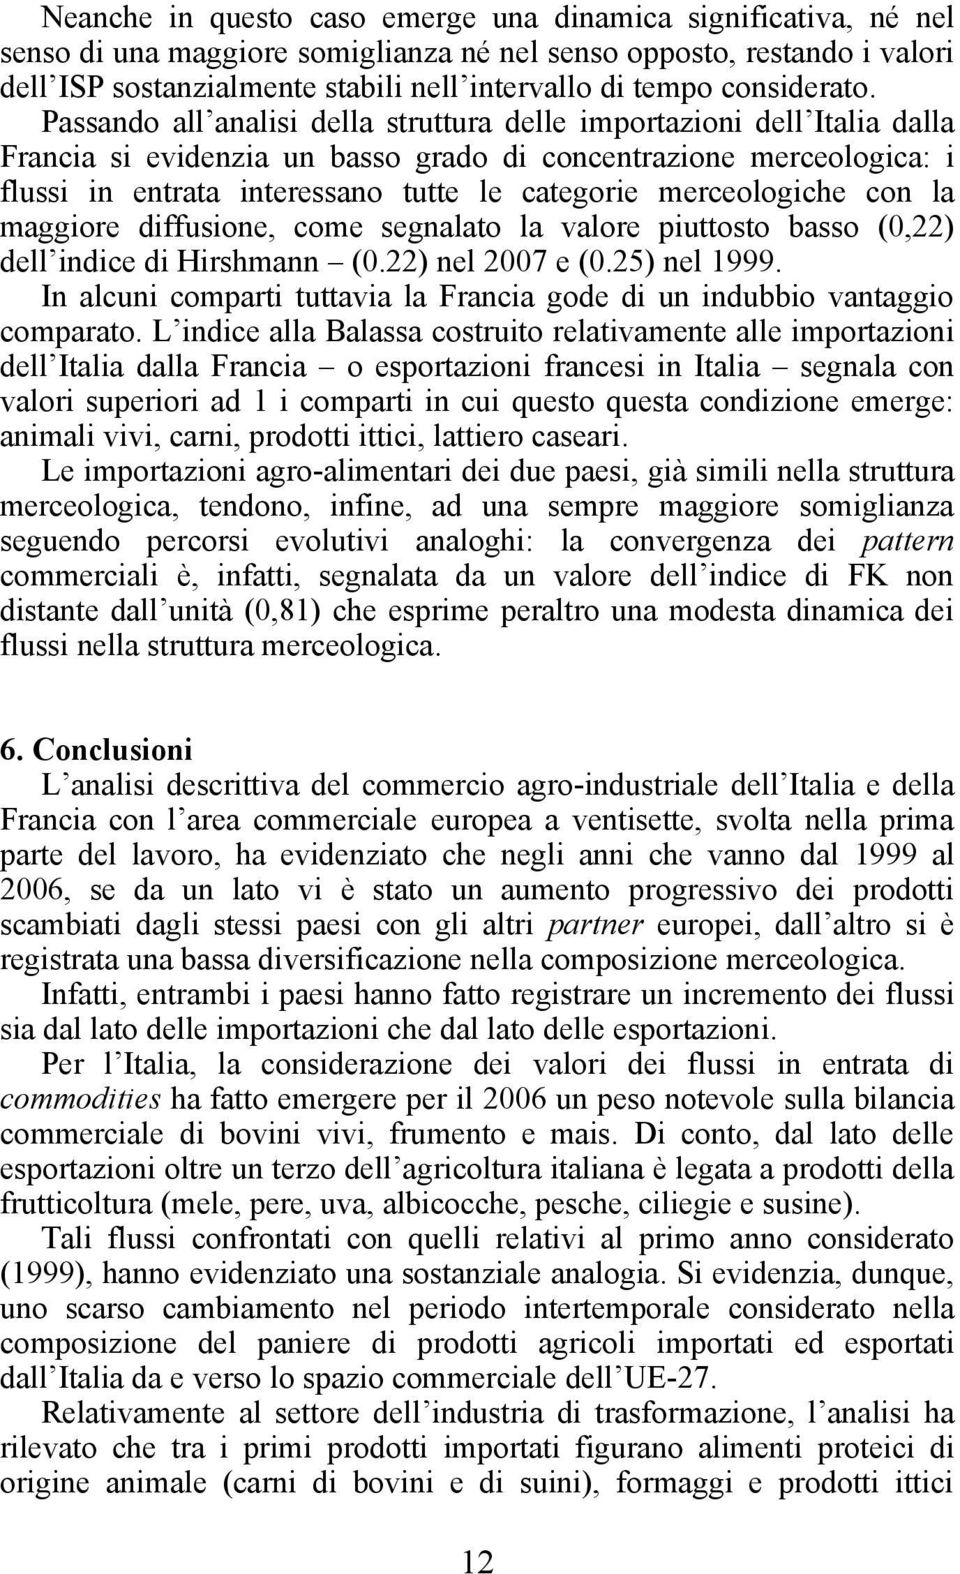 Passando all analisi della struttura delle importazioni dell Italia dalla Francia si evidenzia un basso grado di concentrazione merceologica: i flussi in entrata interessano tutte le categorie